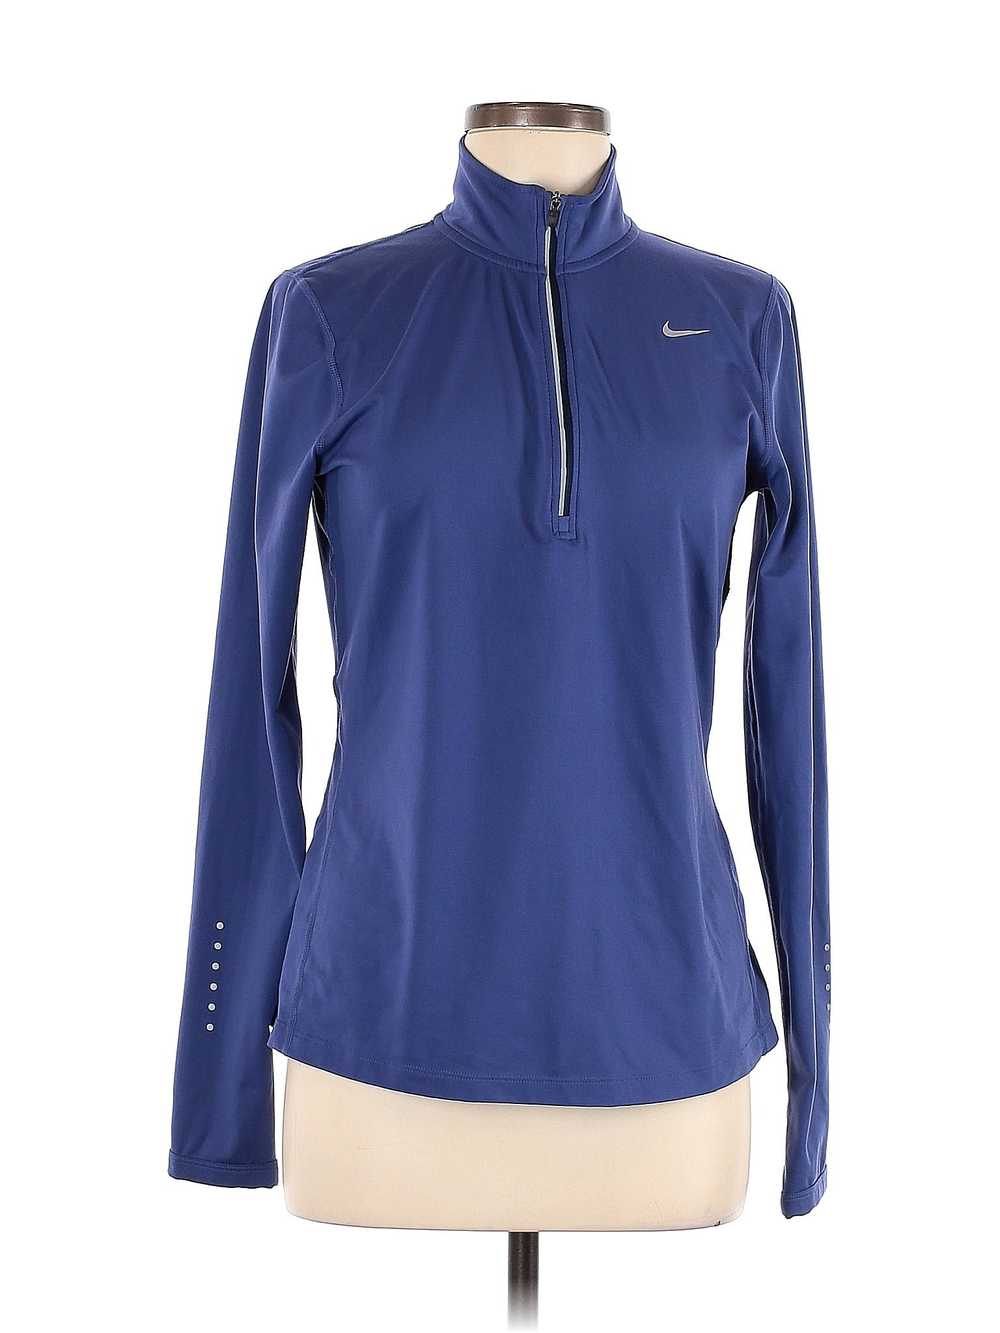 Nike Women Blue Track Jacket M - image 1